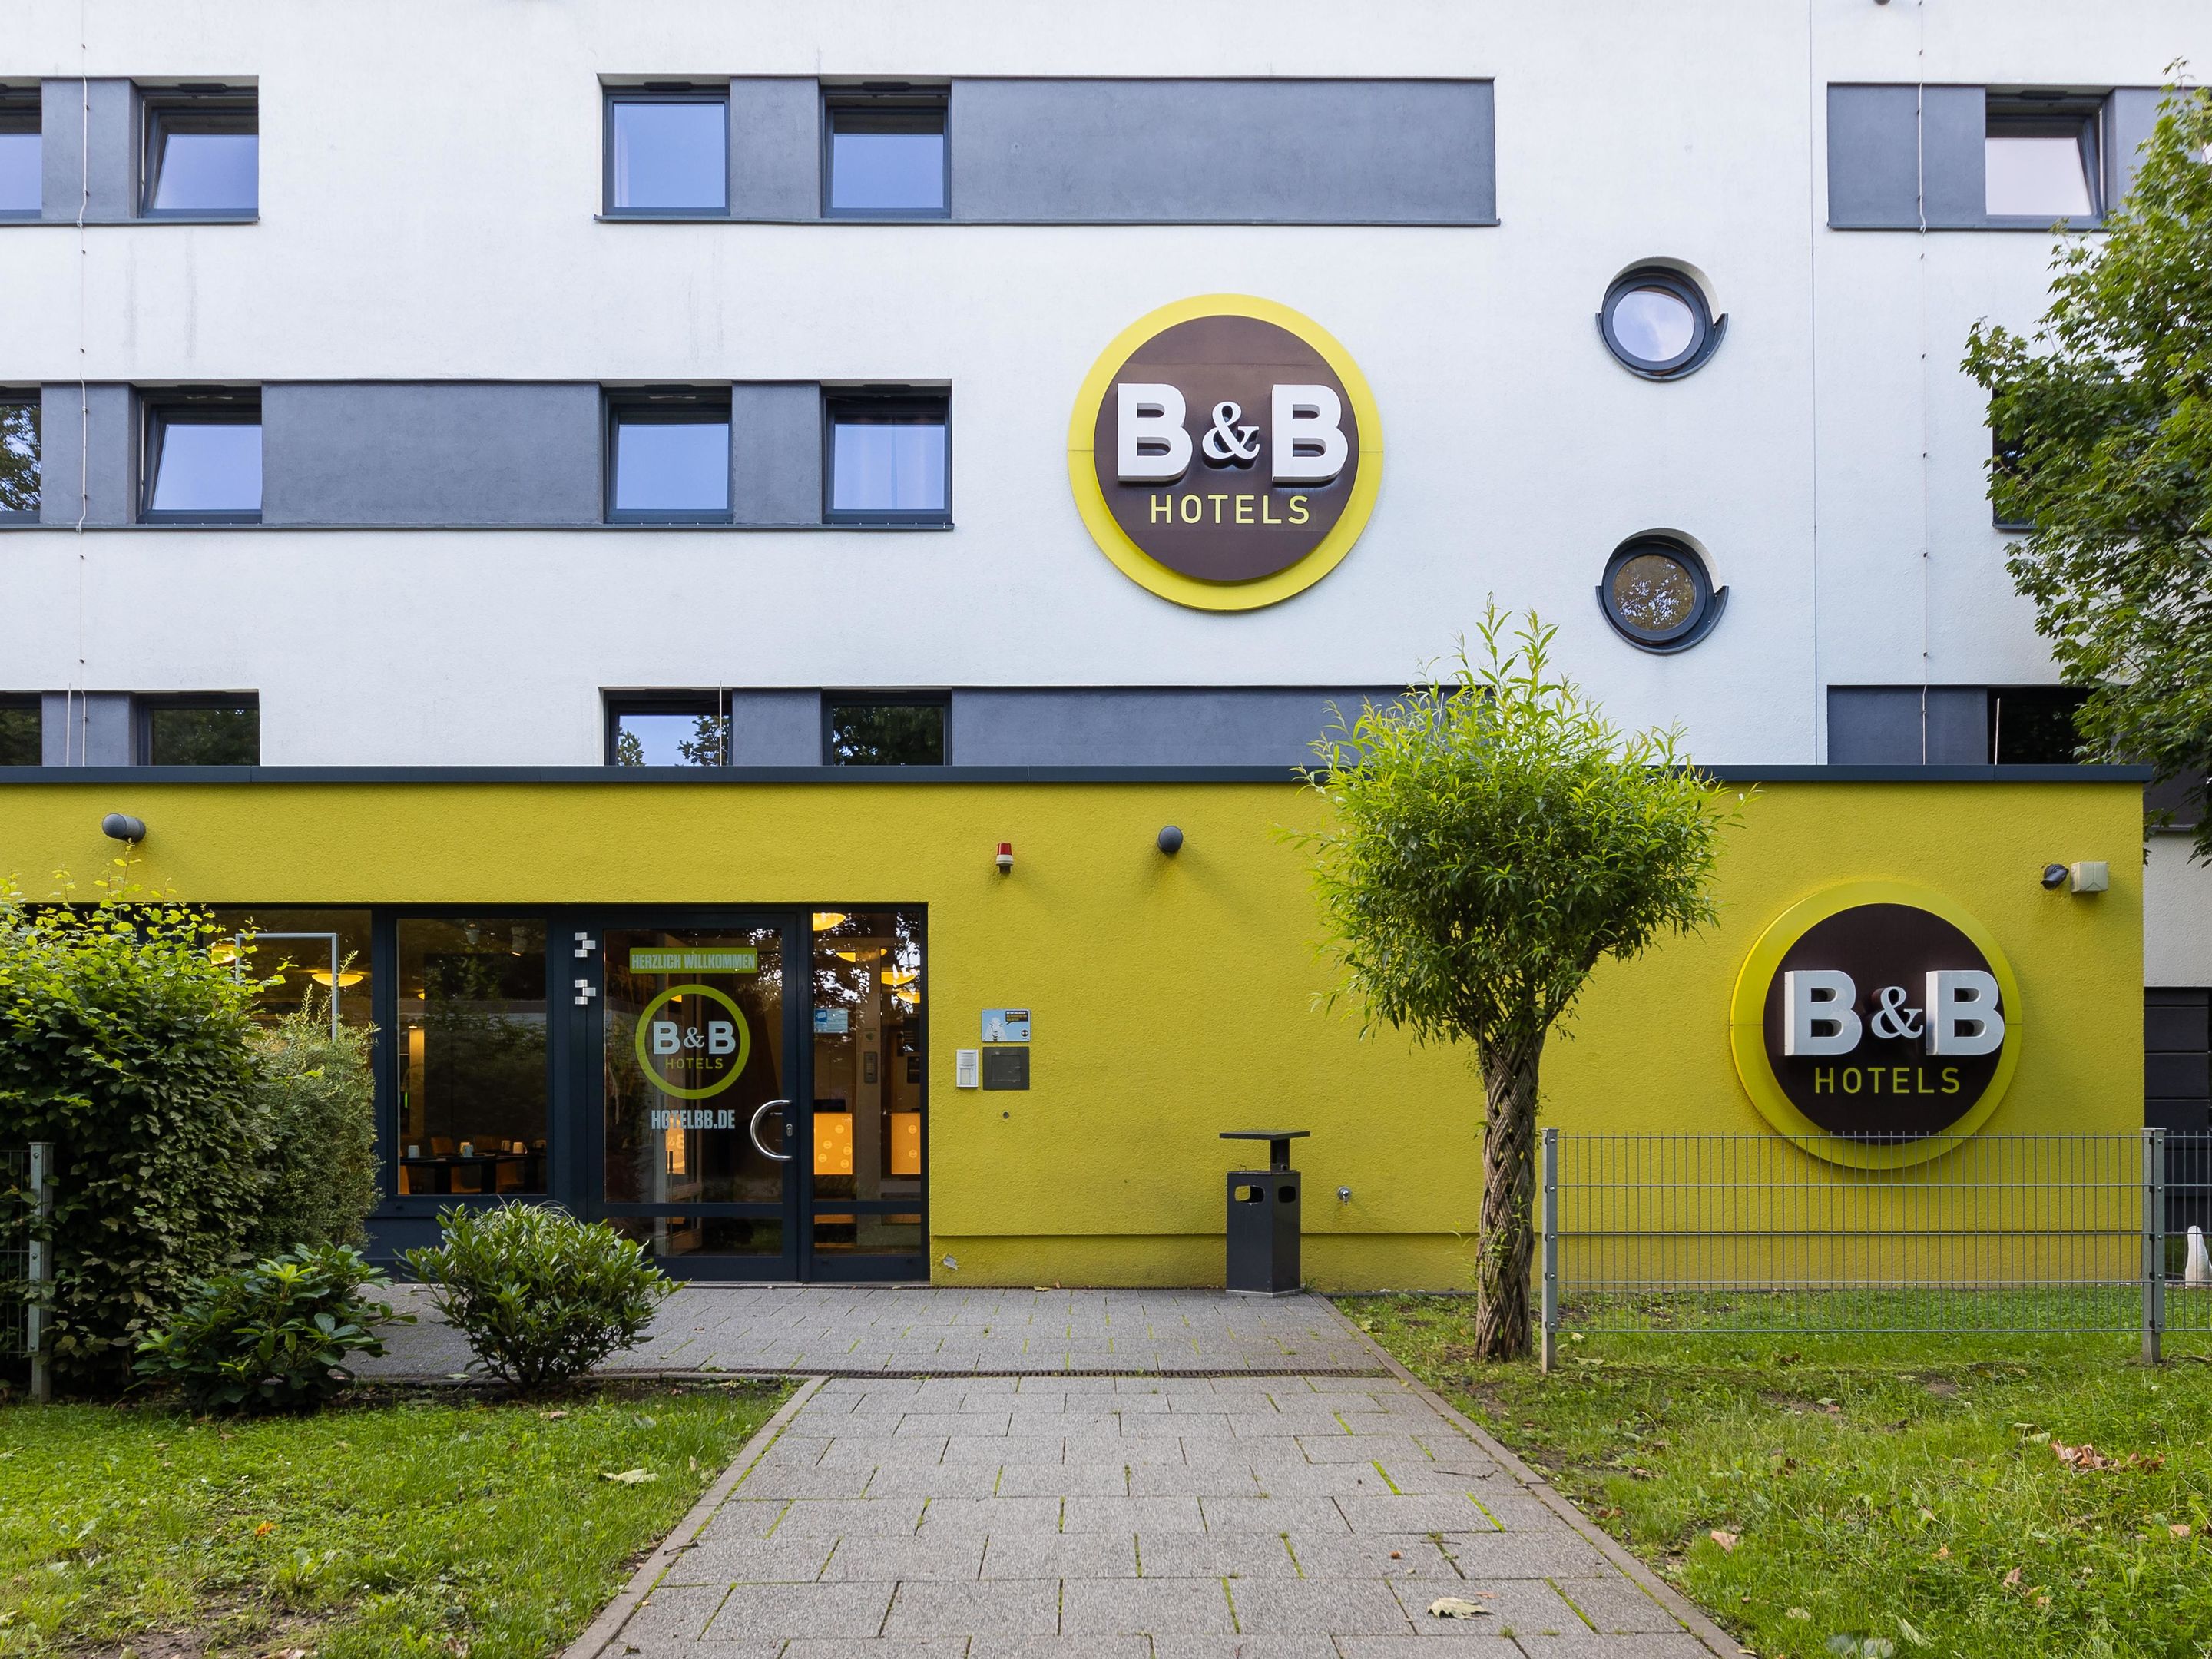 B&B HOTEL Dortmund-Messe, Wittekindstraße 106 in Dortmund